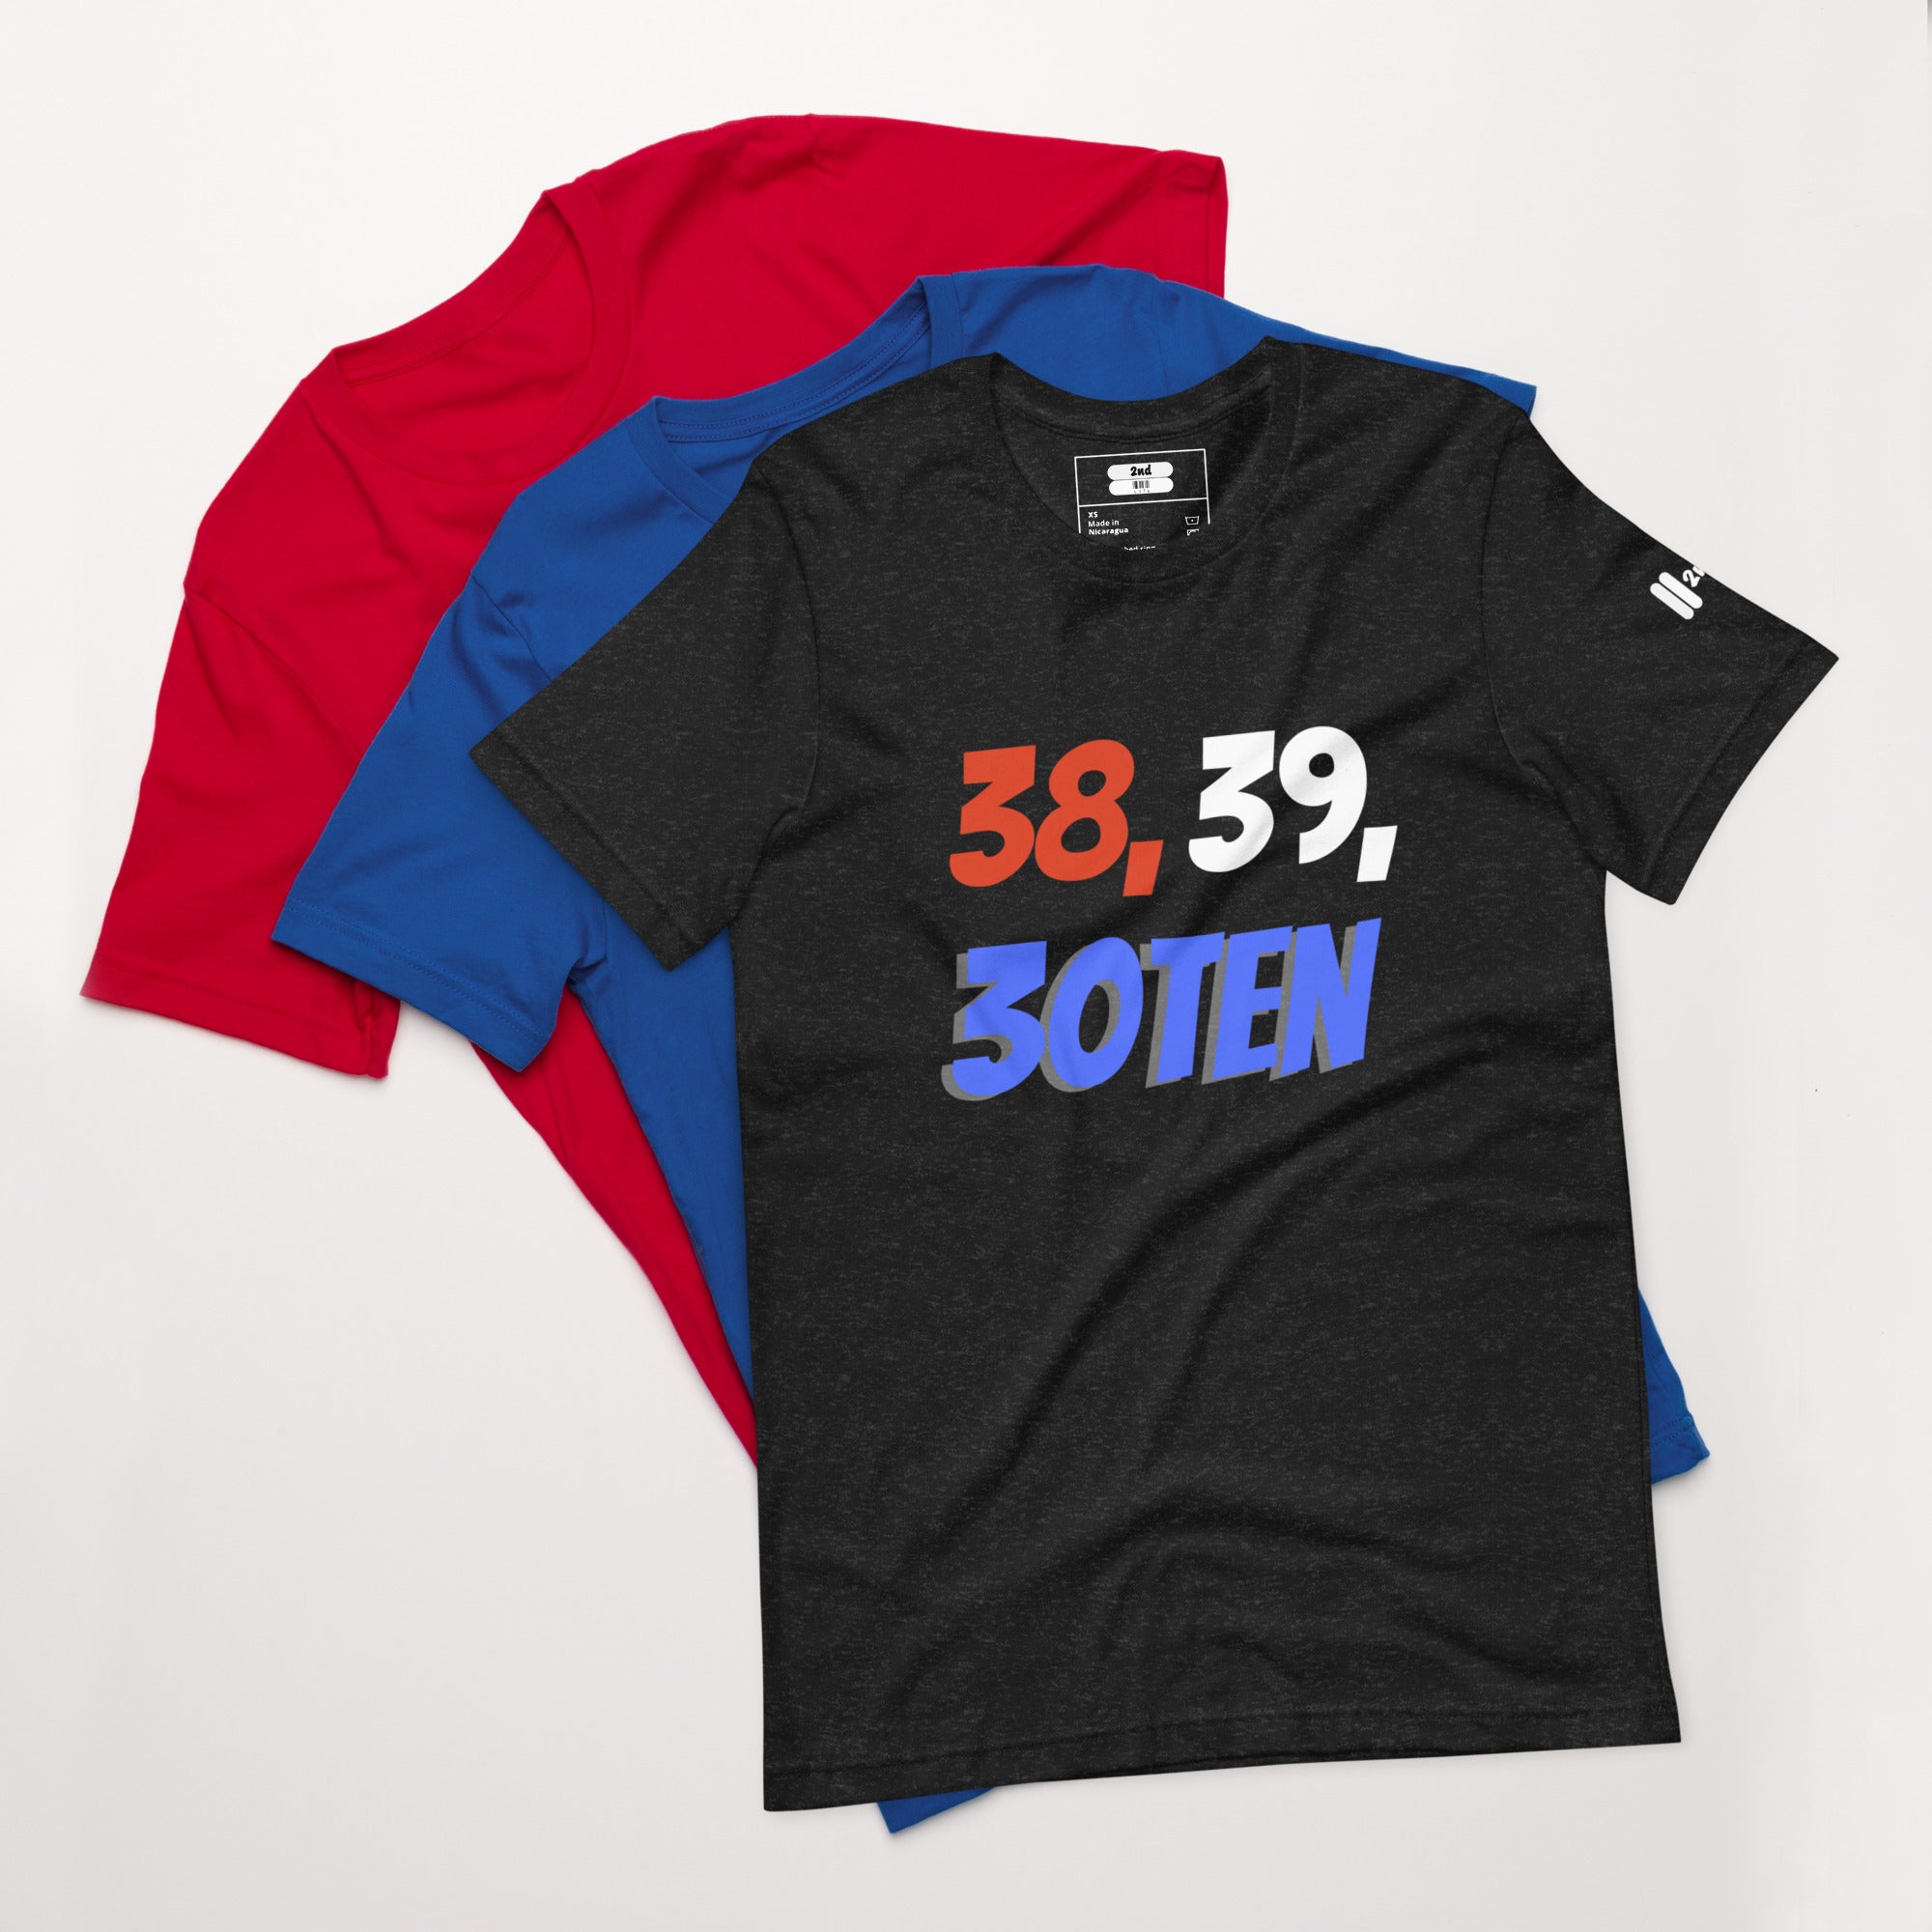 30 Ten Uni t-shirt